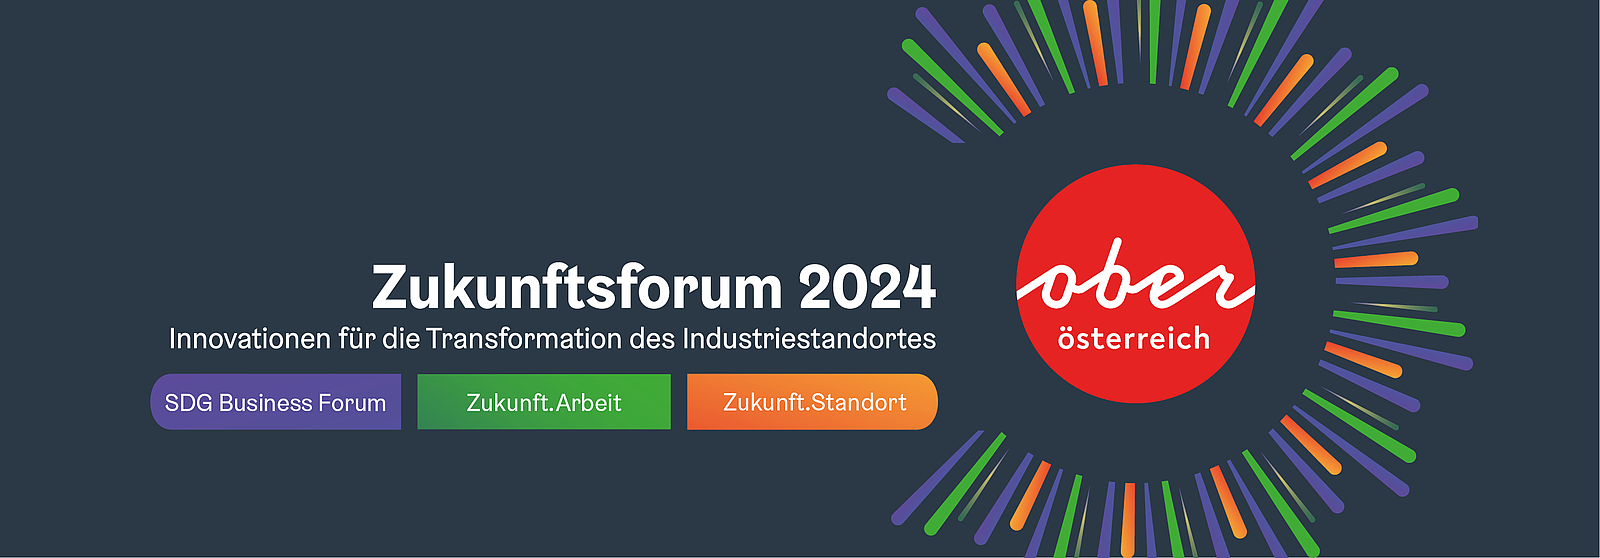 Zukunftsforum Oberösterreich 2023 | Innovation für Transformation des Industriestandortes